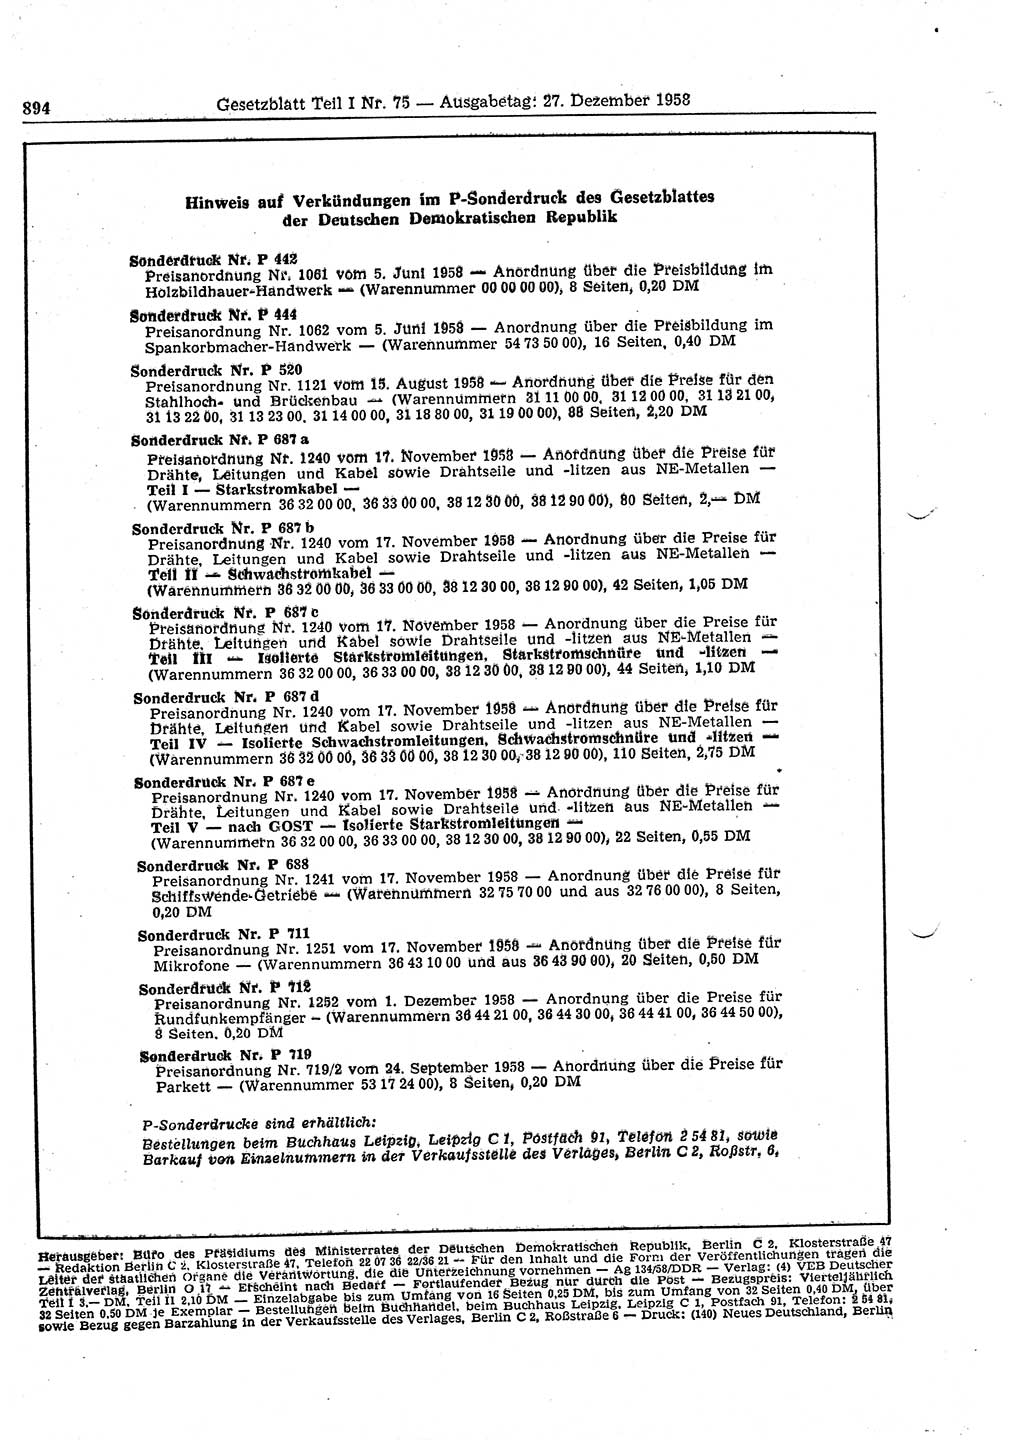 Gesetzblatt (GBl.) der Deutschen Demokratischen Republik (DDR) Teil Ⅰ 1958, Seite 894 (GBl. DDR Ⅰ 1958, S. 894)